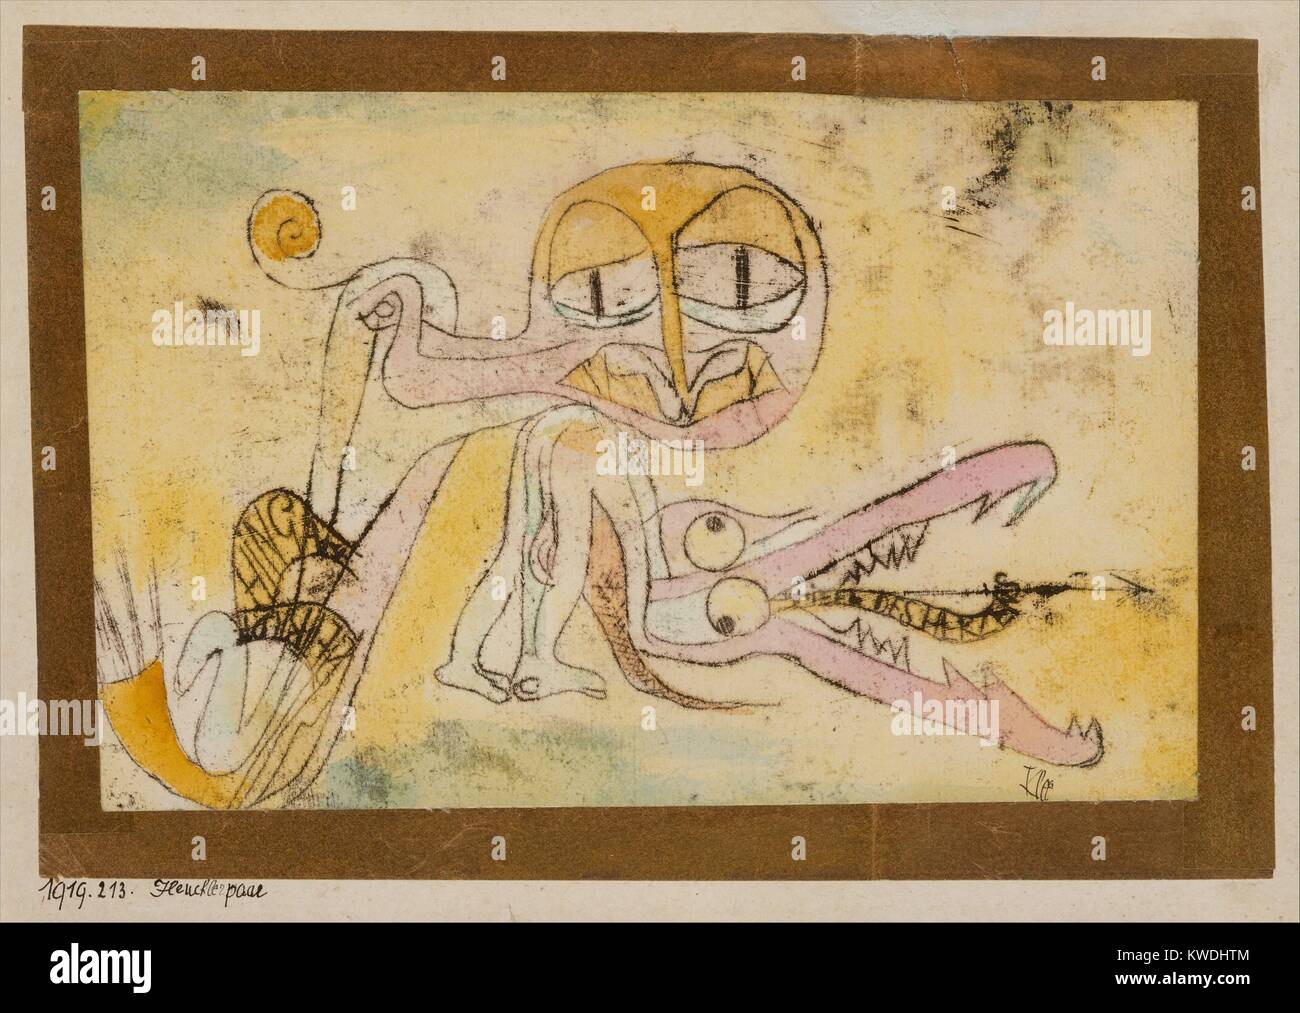 Die Heuchler, von Paul Klee, 1919, Schweizer Zeichnung, Aquarell und Tusche auf Papier. Zeichnung von grotesk und verzerrt humanoiden Figuren (BSLOC 2017 7 34) Stockfoto